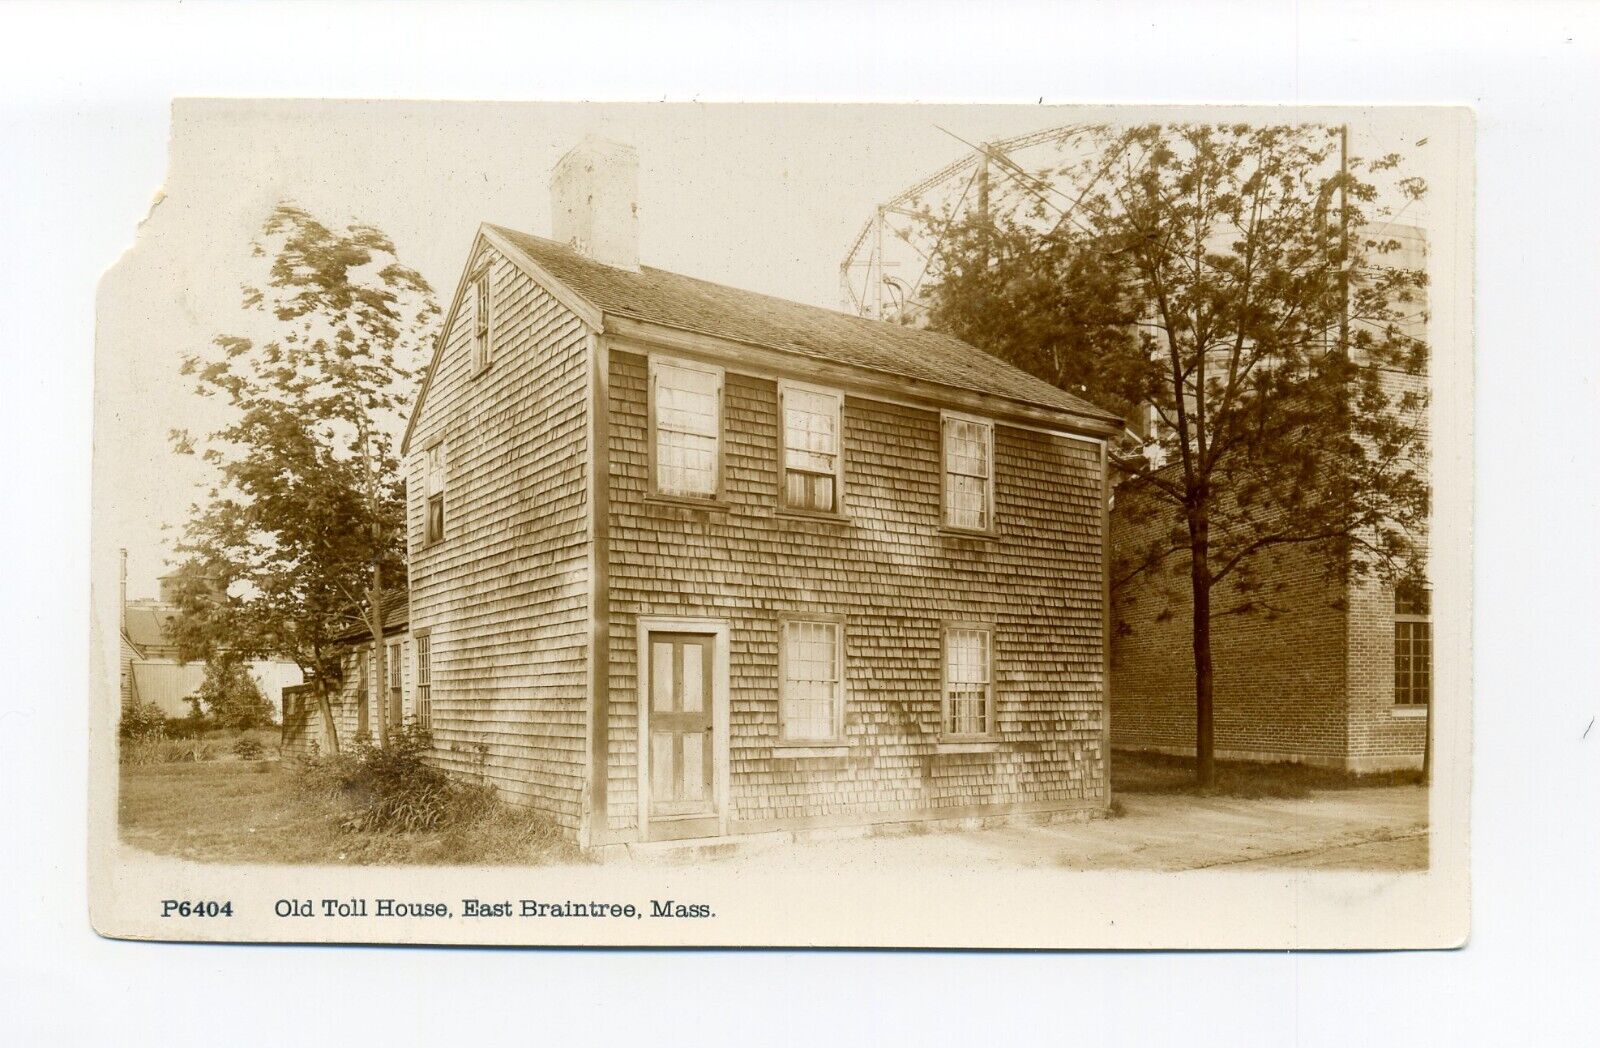 East Braintree MA RPPC photo postcard, Old Toll House, pub - Underwood